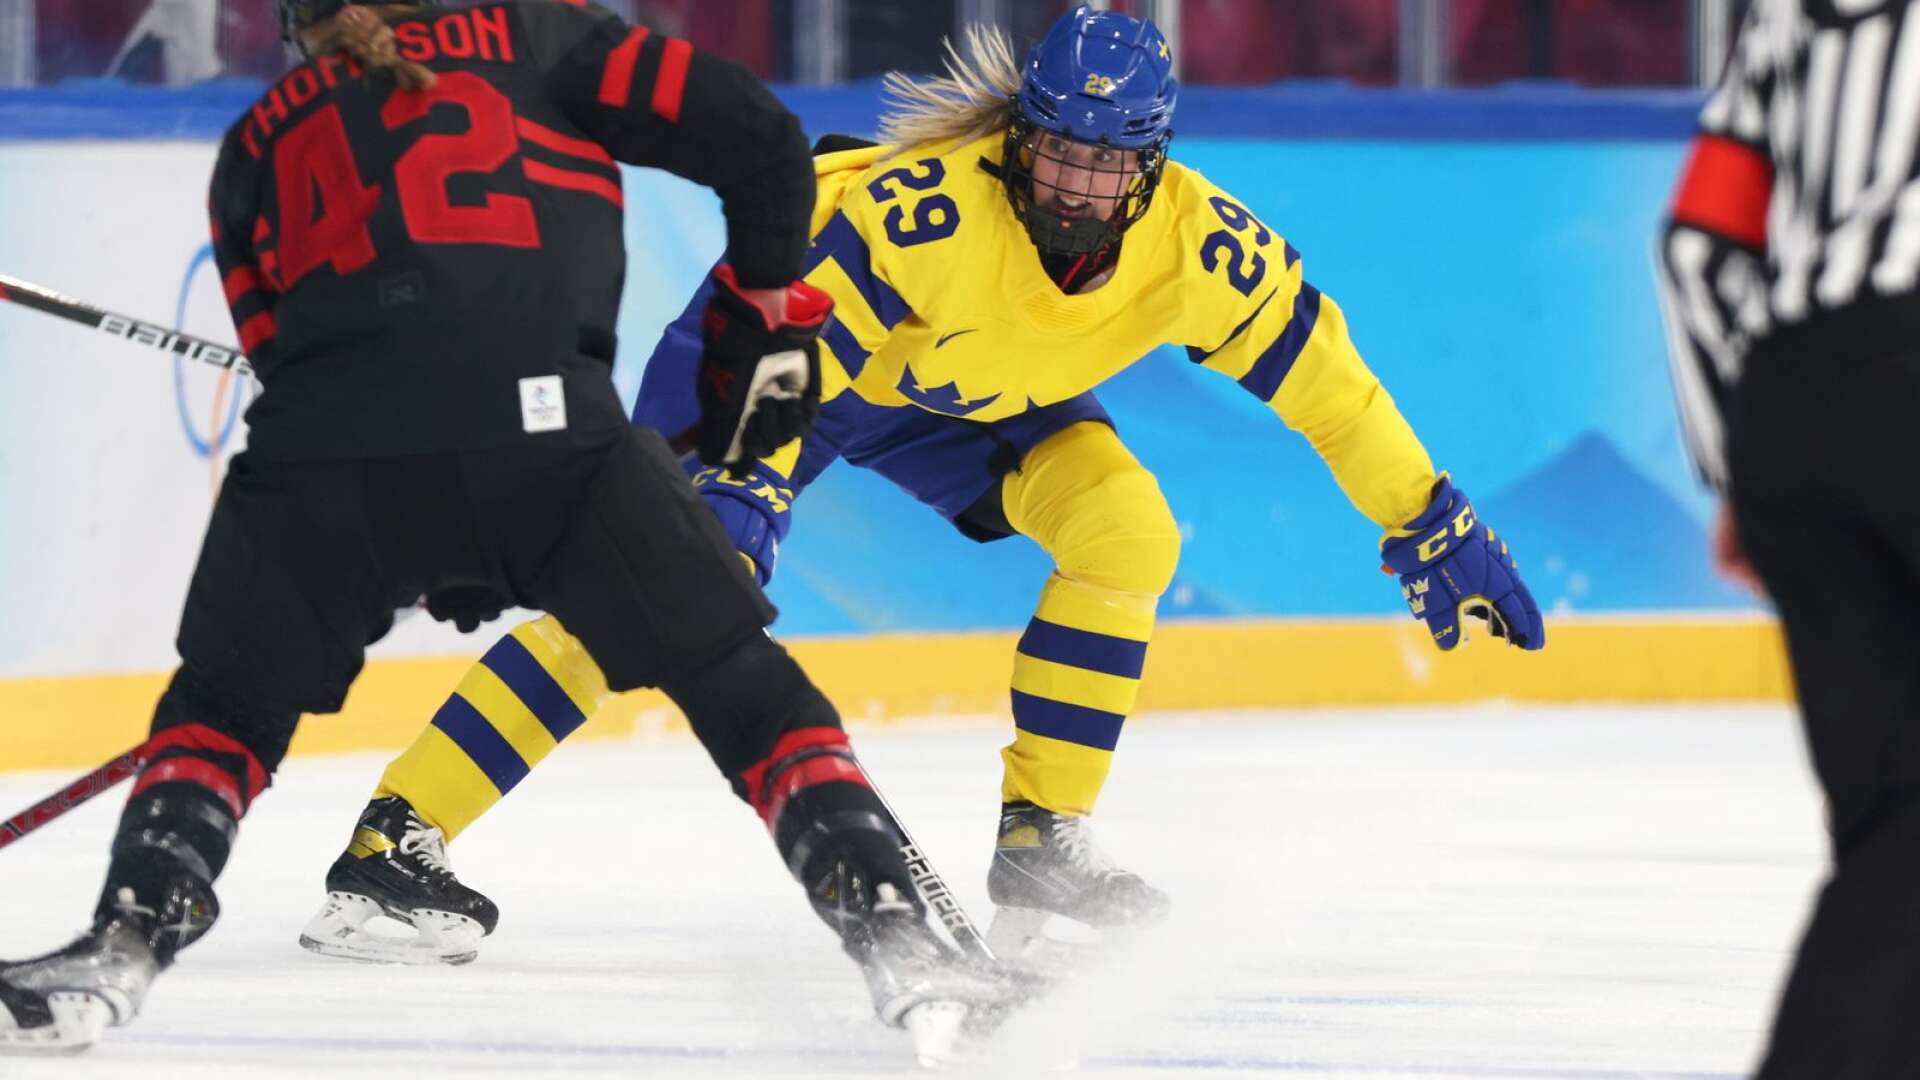 Sverige med Olivia Carlsson föll stort i OS-kvartsfinalen mot Kanada med Claire Thompson.